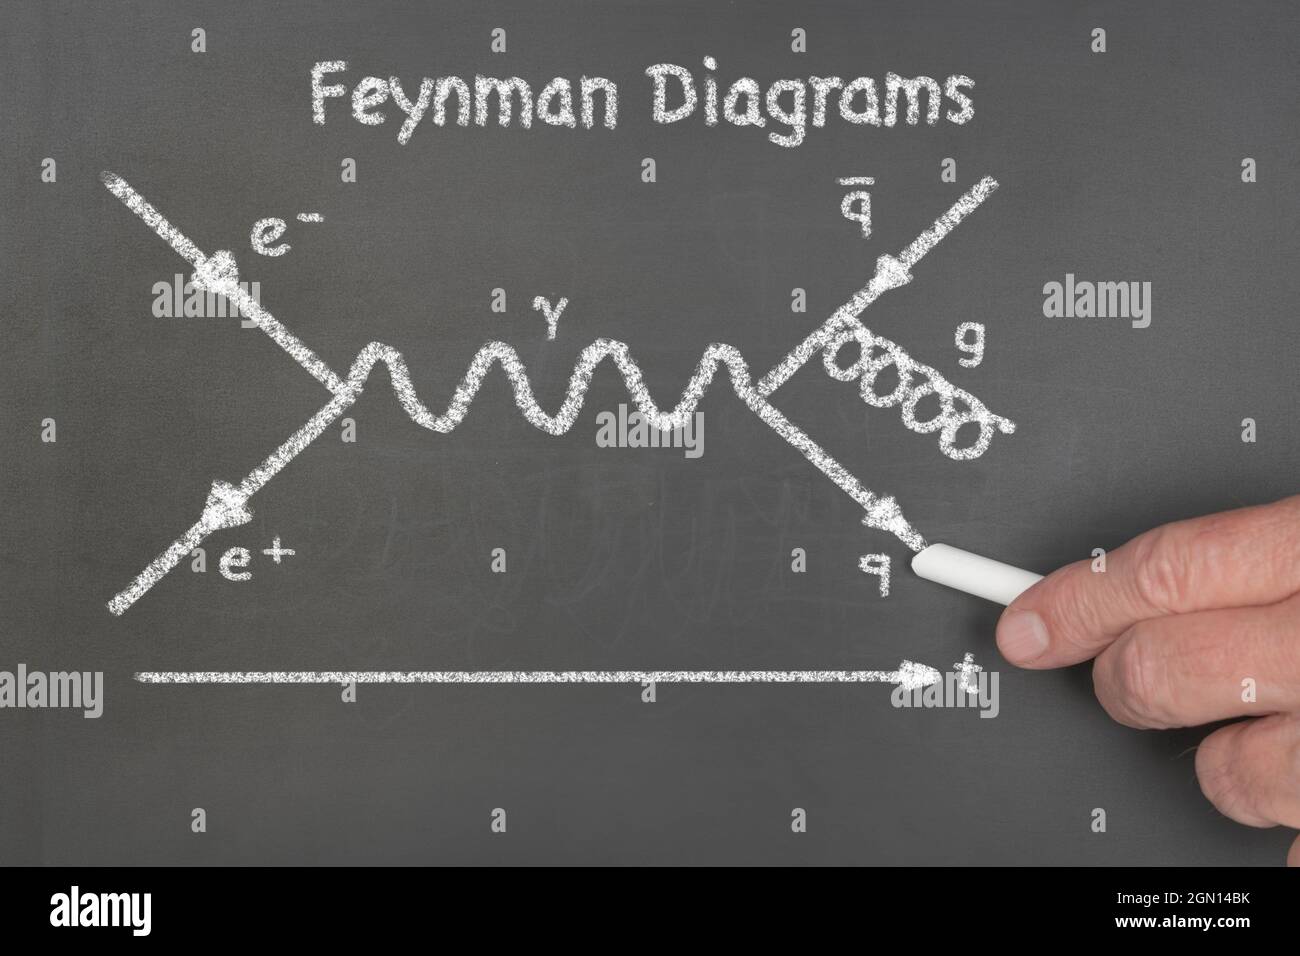 Un profesor explica a los estudiantes el diagrama de Feynman, una ecuación teórica de la física que describe el comportamiento y la interacción de las partículas subatómicas. Foto de stock